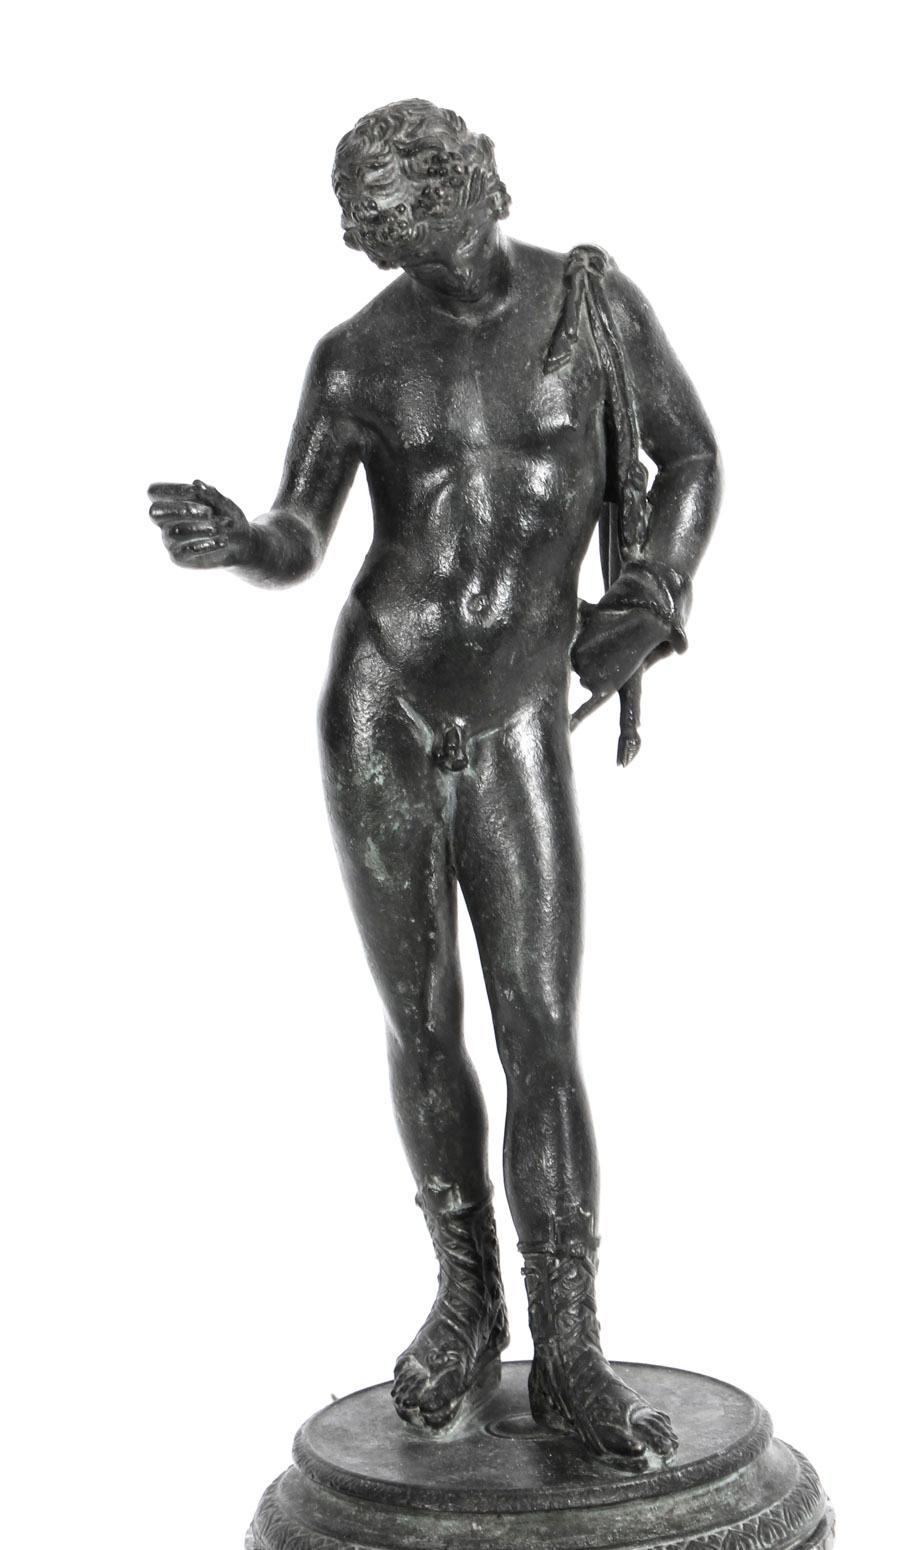 Il s'agit d'une superbe figure de Narcisse en bronze patiné du Grand Tour, datant du dernier quart du XIXe siècle.

Dans la mythologie grecque, Narcisse était un chasseur qui se distinguait par sa beauté.
 
Cette étonnante figure classique en